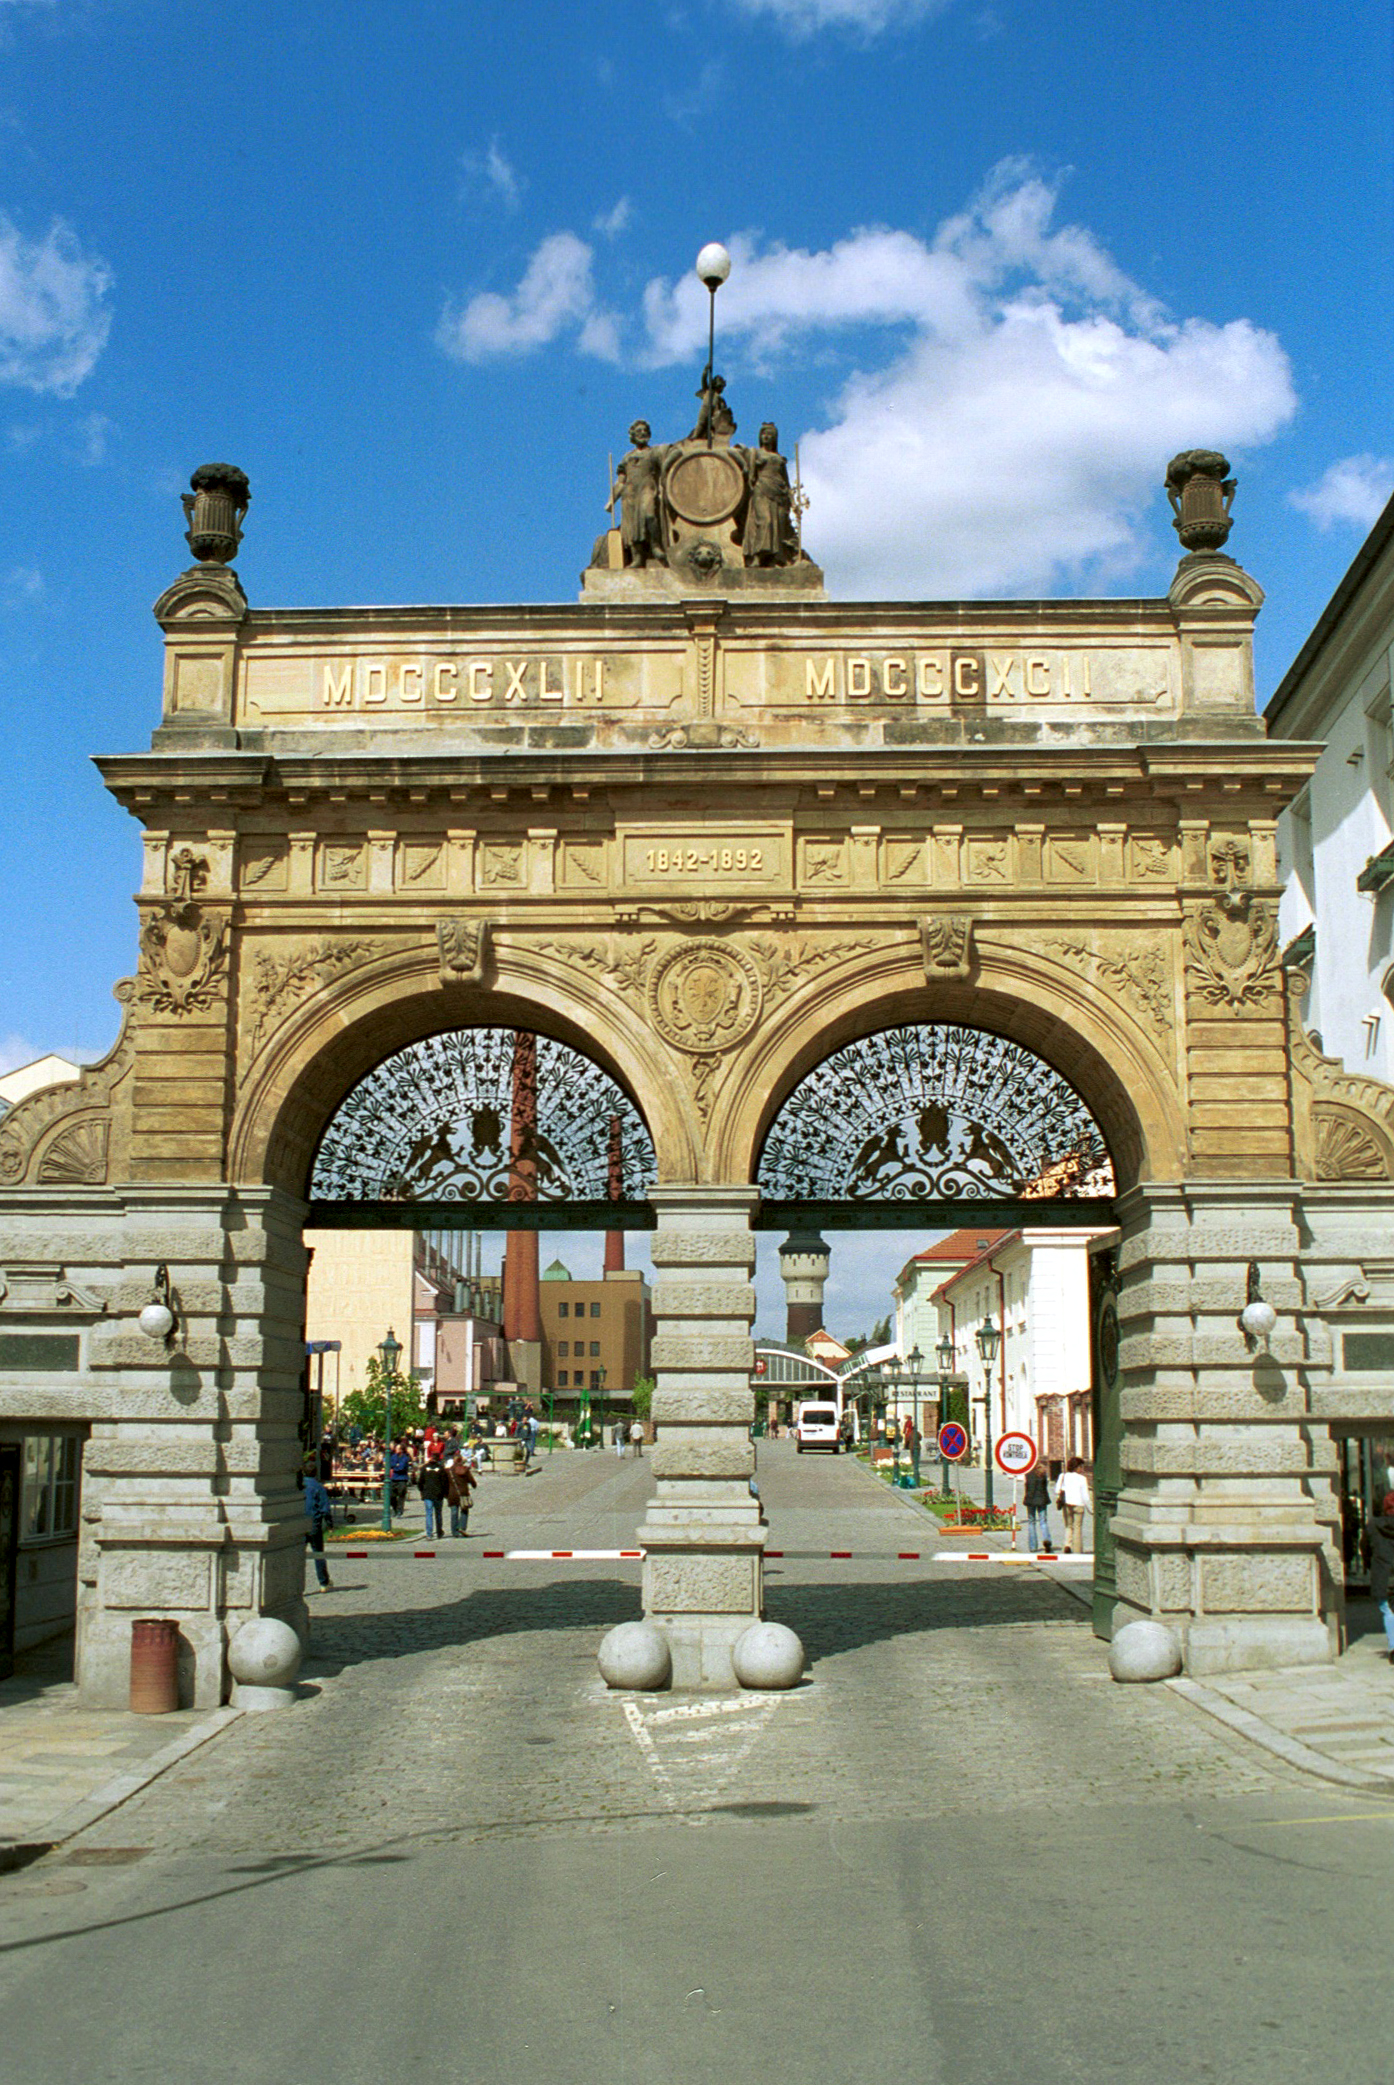 Brána pivovaru Plzeň